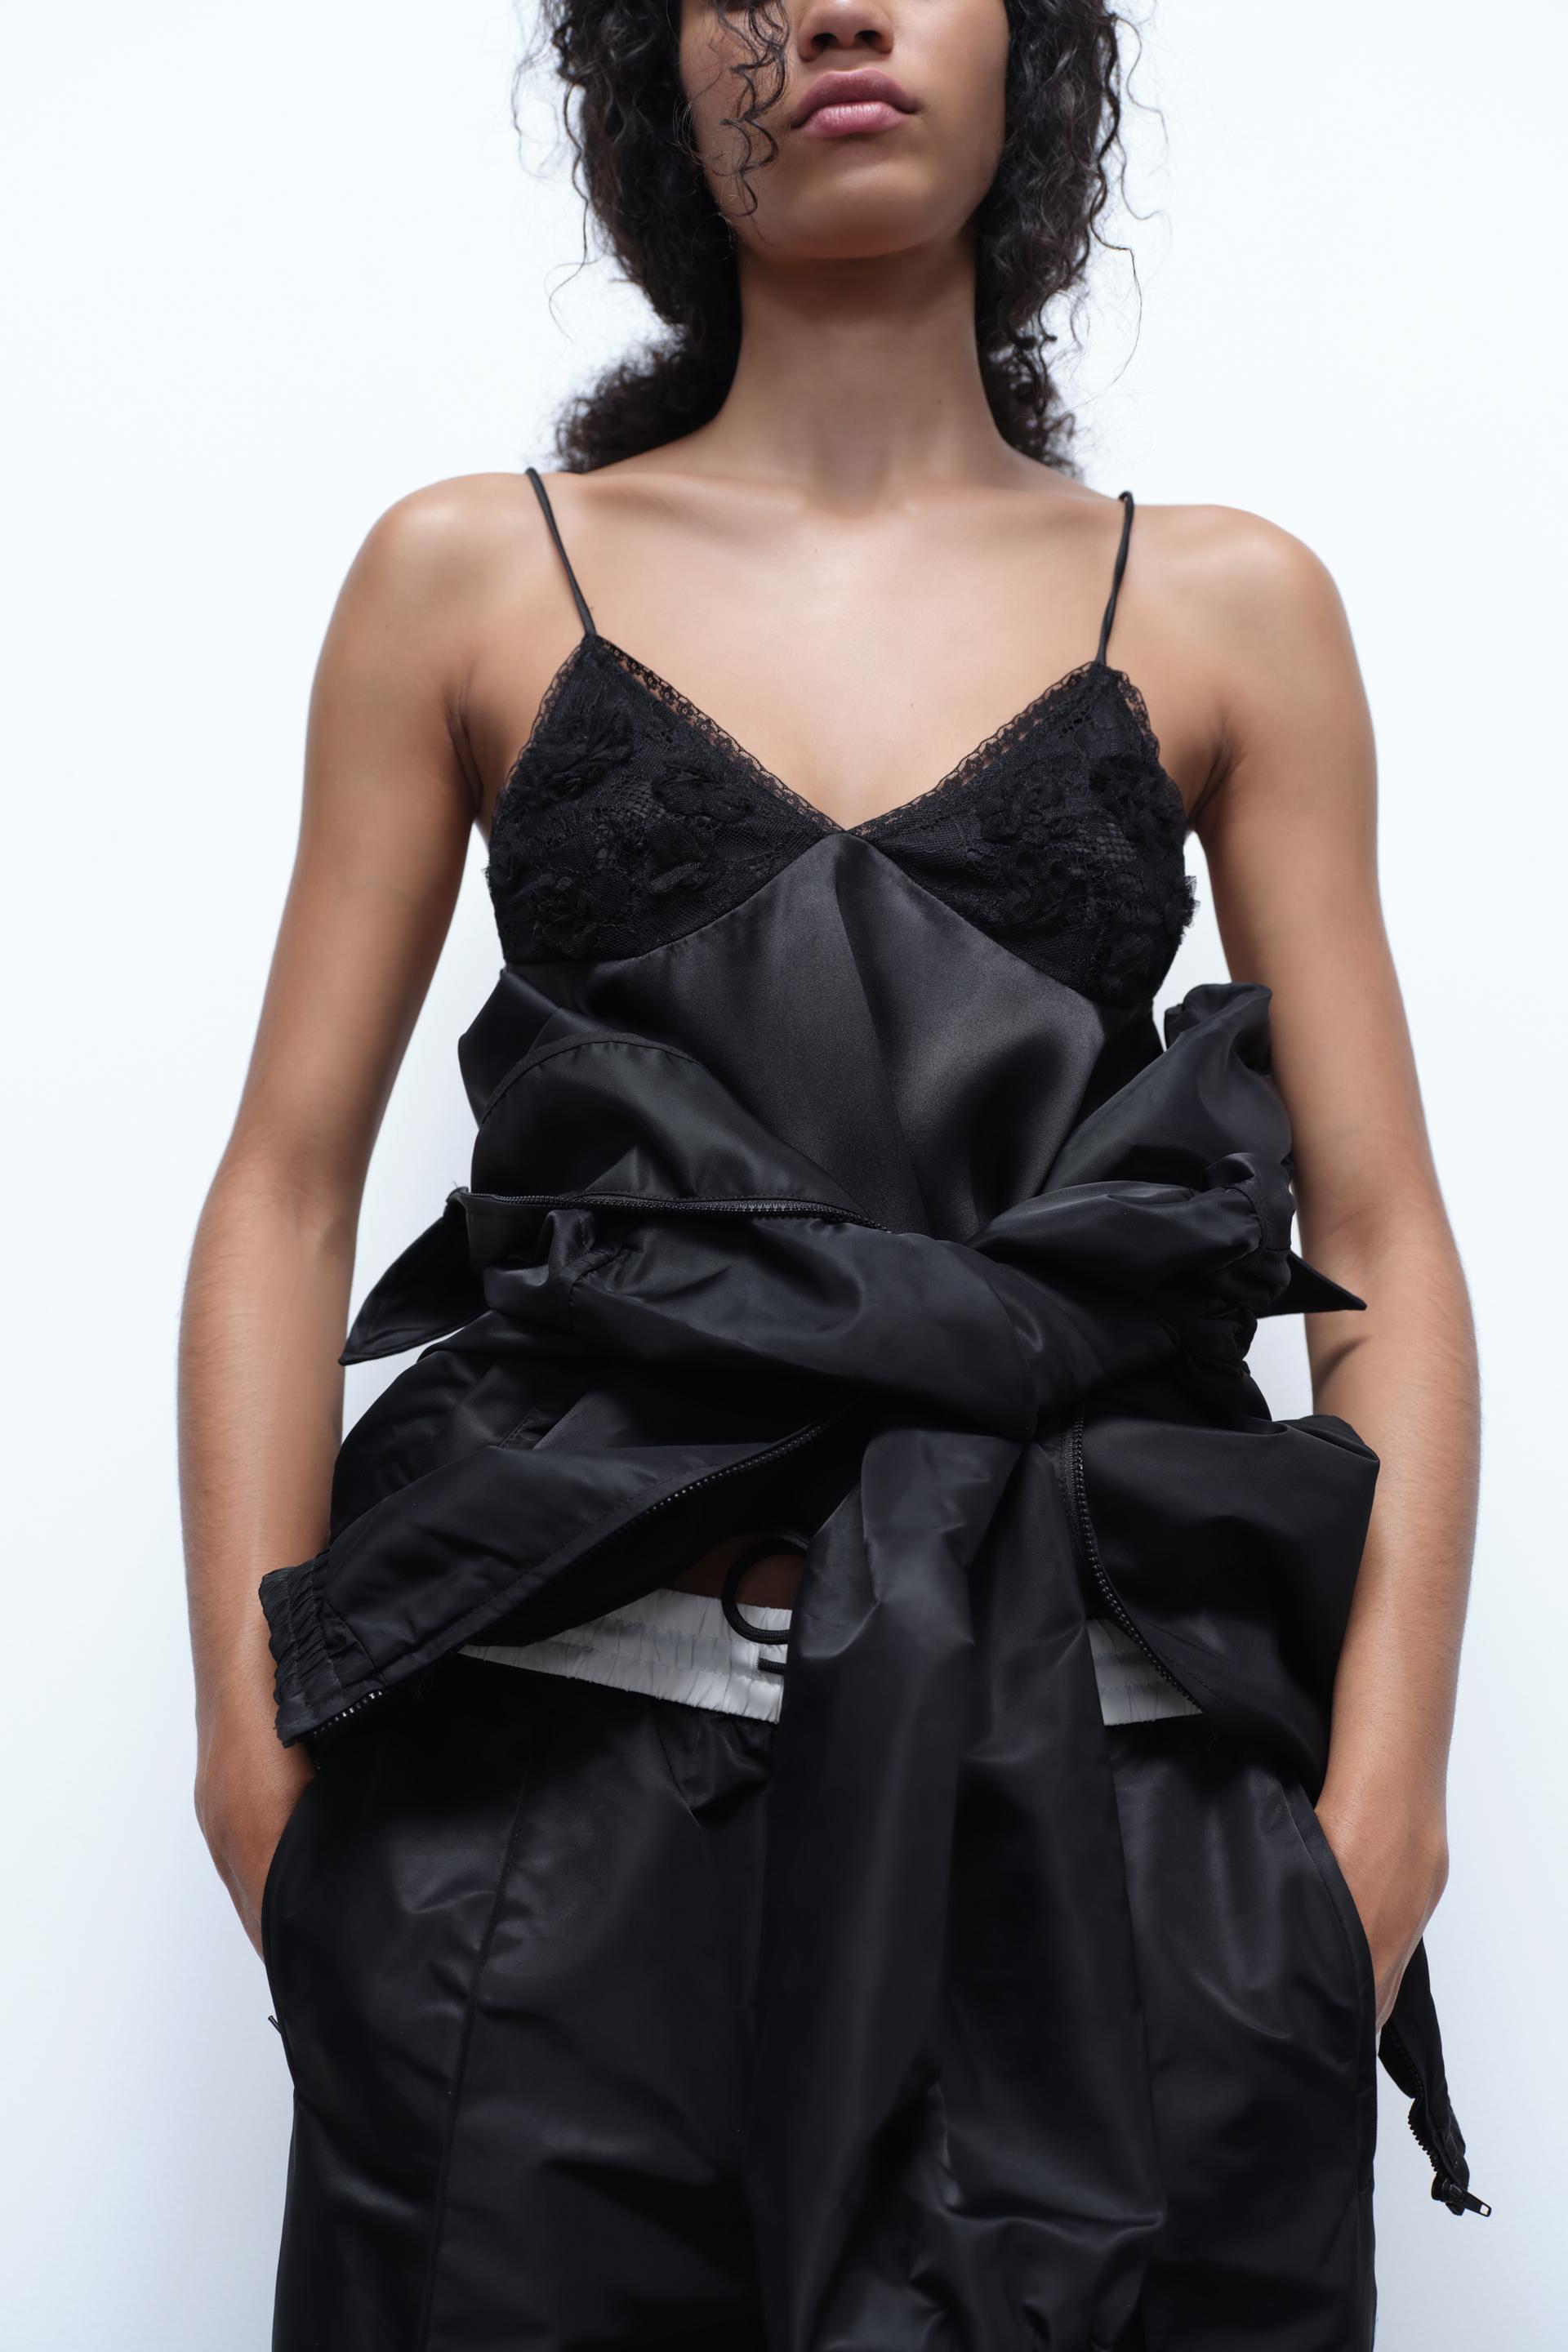 NEW ZARA Woman BLACK MINI CAMISOLE DRESS BEADED Straps Fashion Size XS  #6147